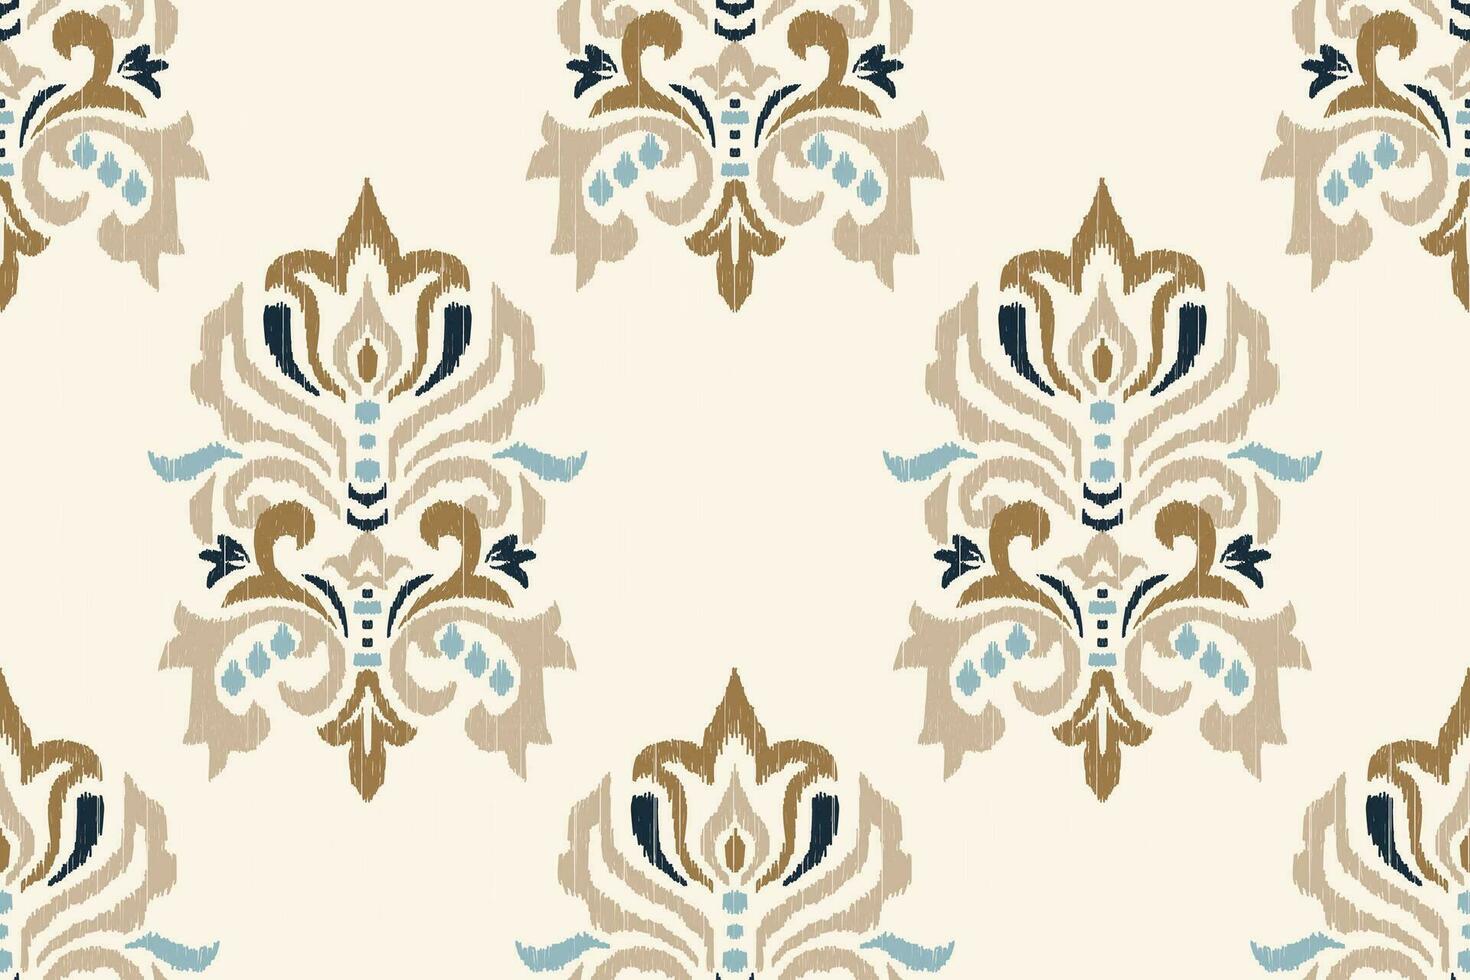 ikat floral paisley broderie sur blanc background.ikat ethnique Oriental sans couture modèle traditionnel.aztèque style abstrait vecteur illustration.design pour texture, tissu, vêtements, emballage, décoration.